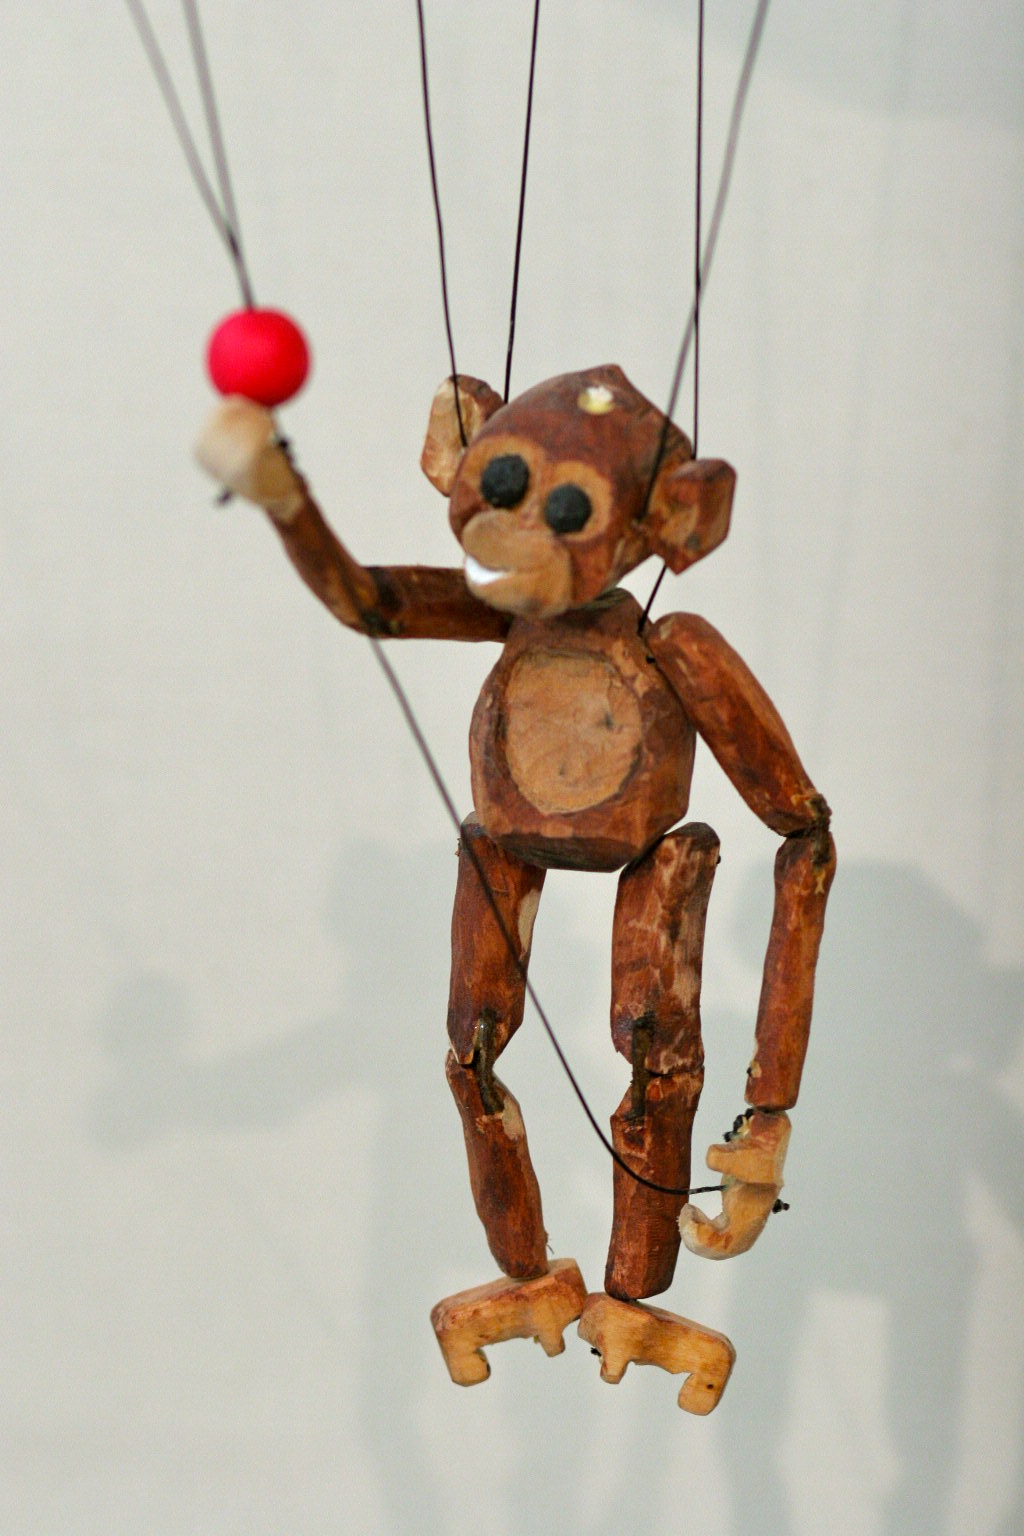 marionette.html